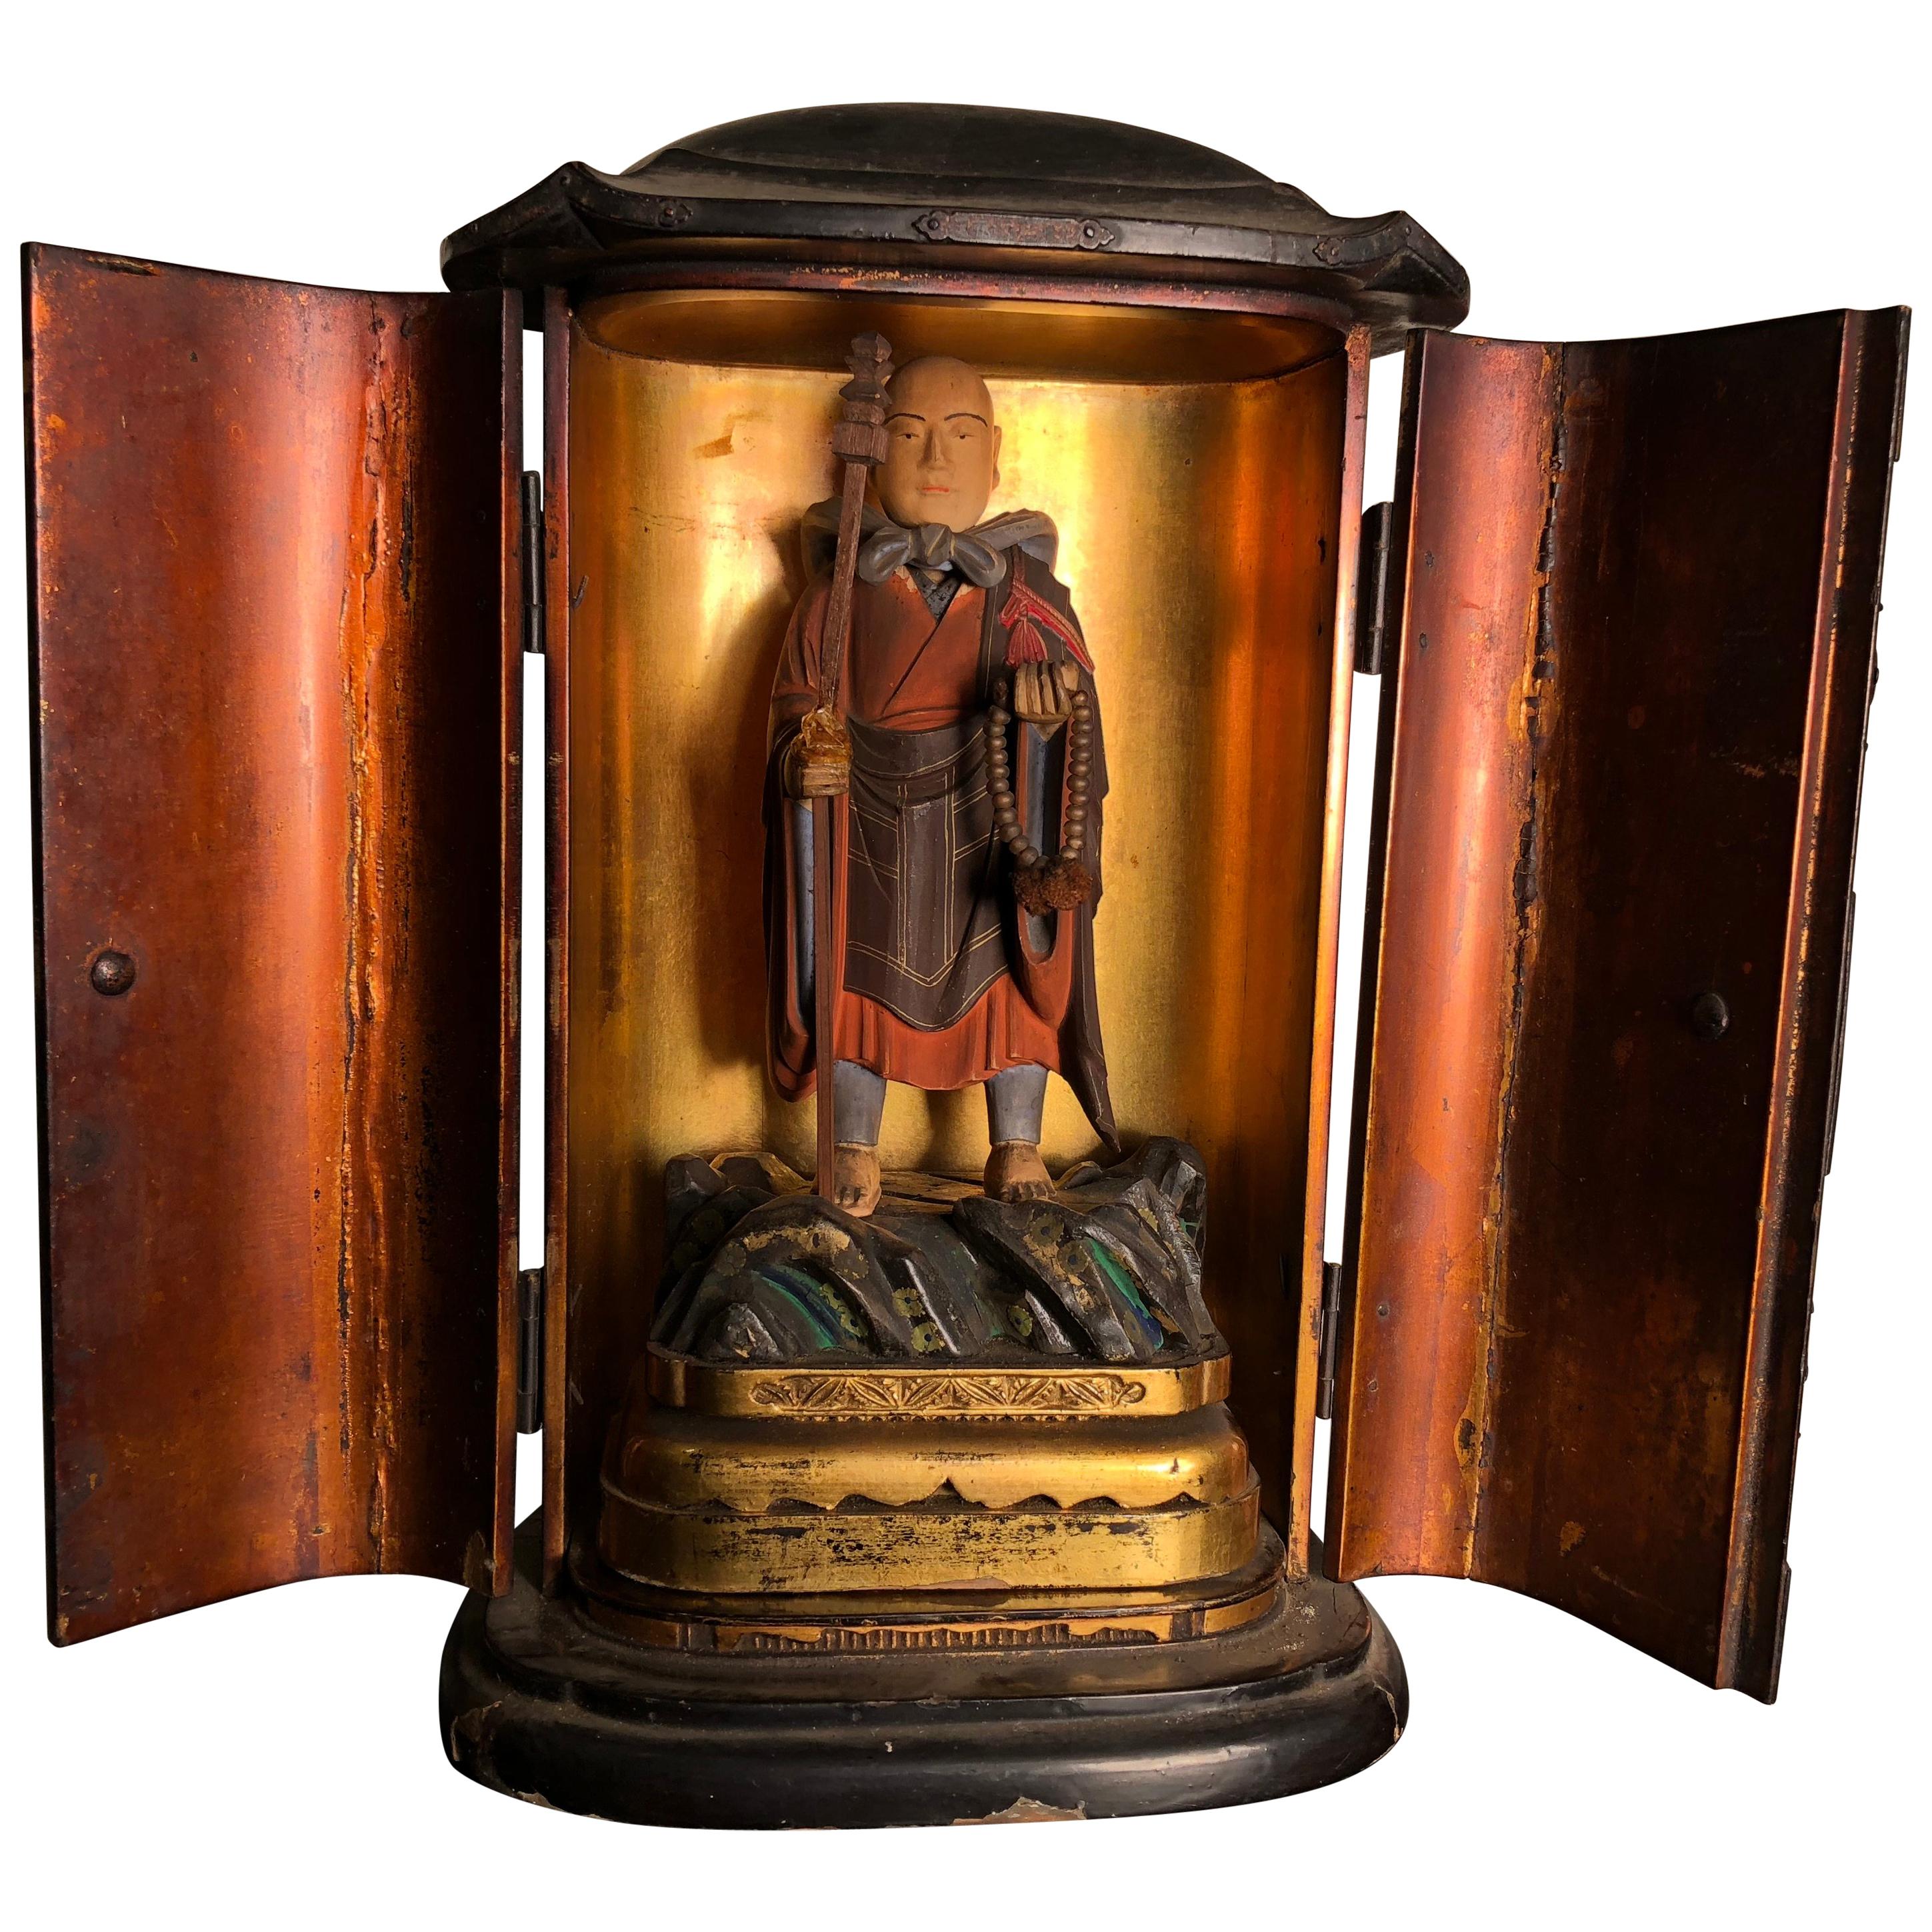 Japan Feine alte buddhistische Figur in originaler Gold- und Schwarzlackbox ::Zushi